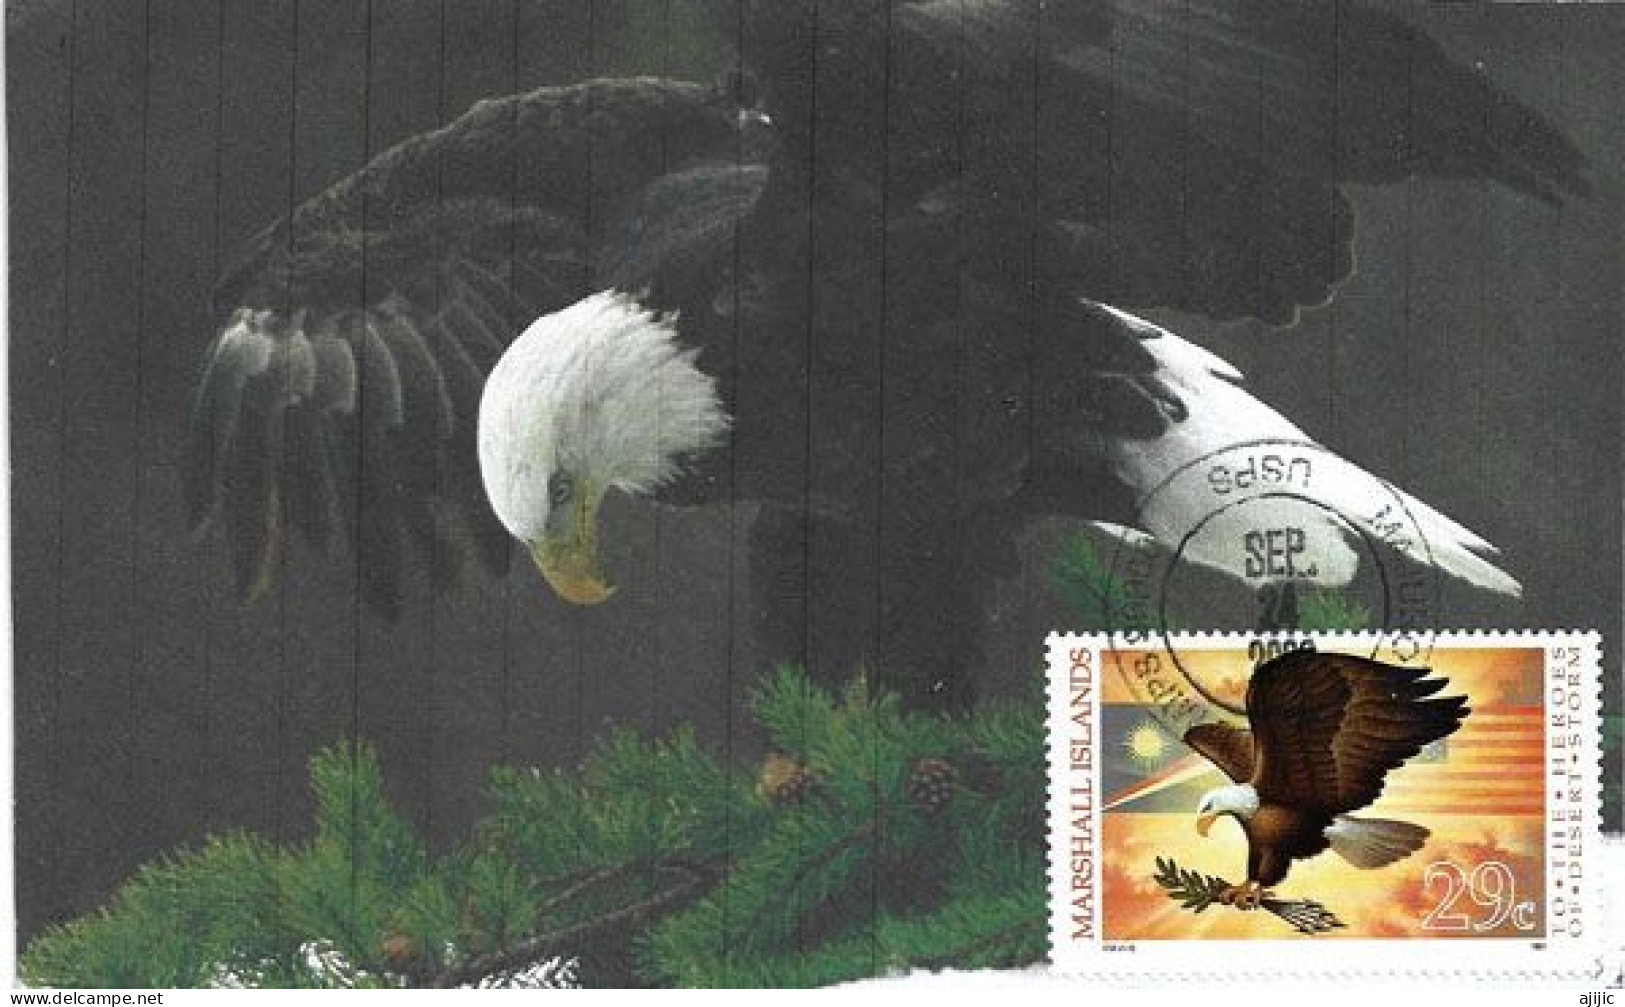 MARSHALL ISLAND: American Eagle (Bald Eagle)   MAXI-CARD From Majuro Marshall Islands - Marshall